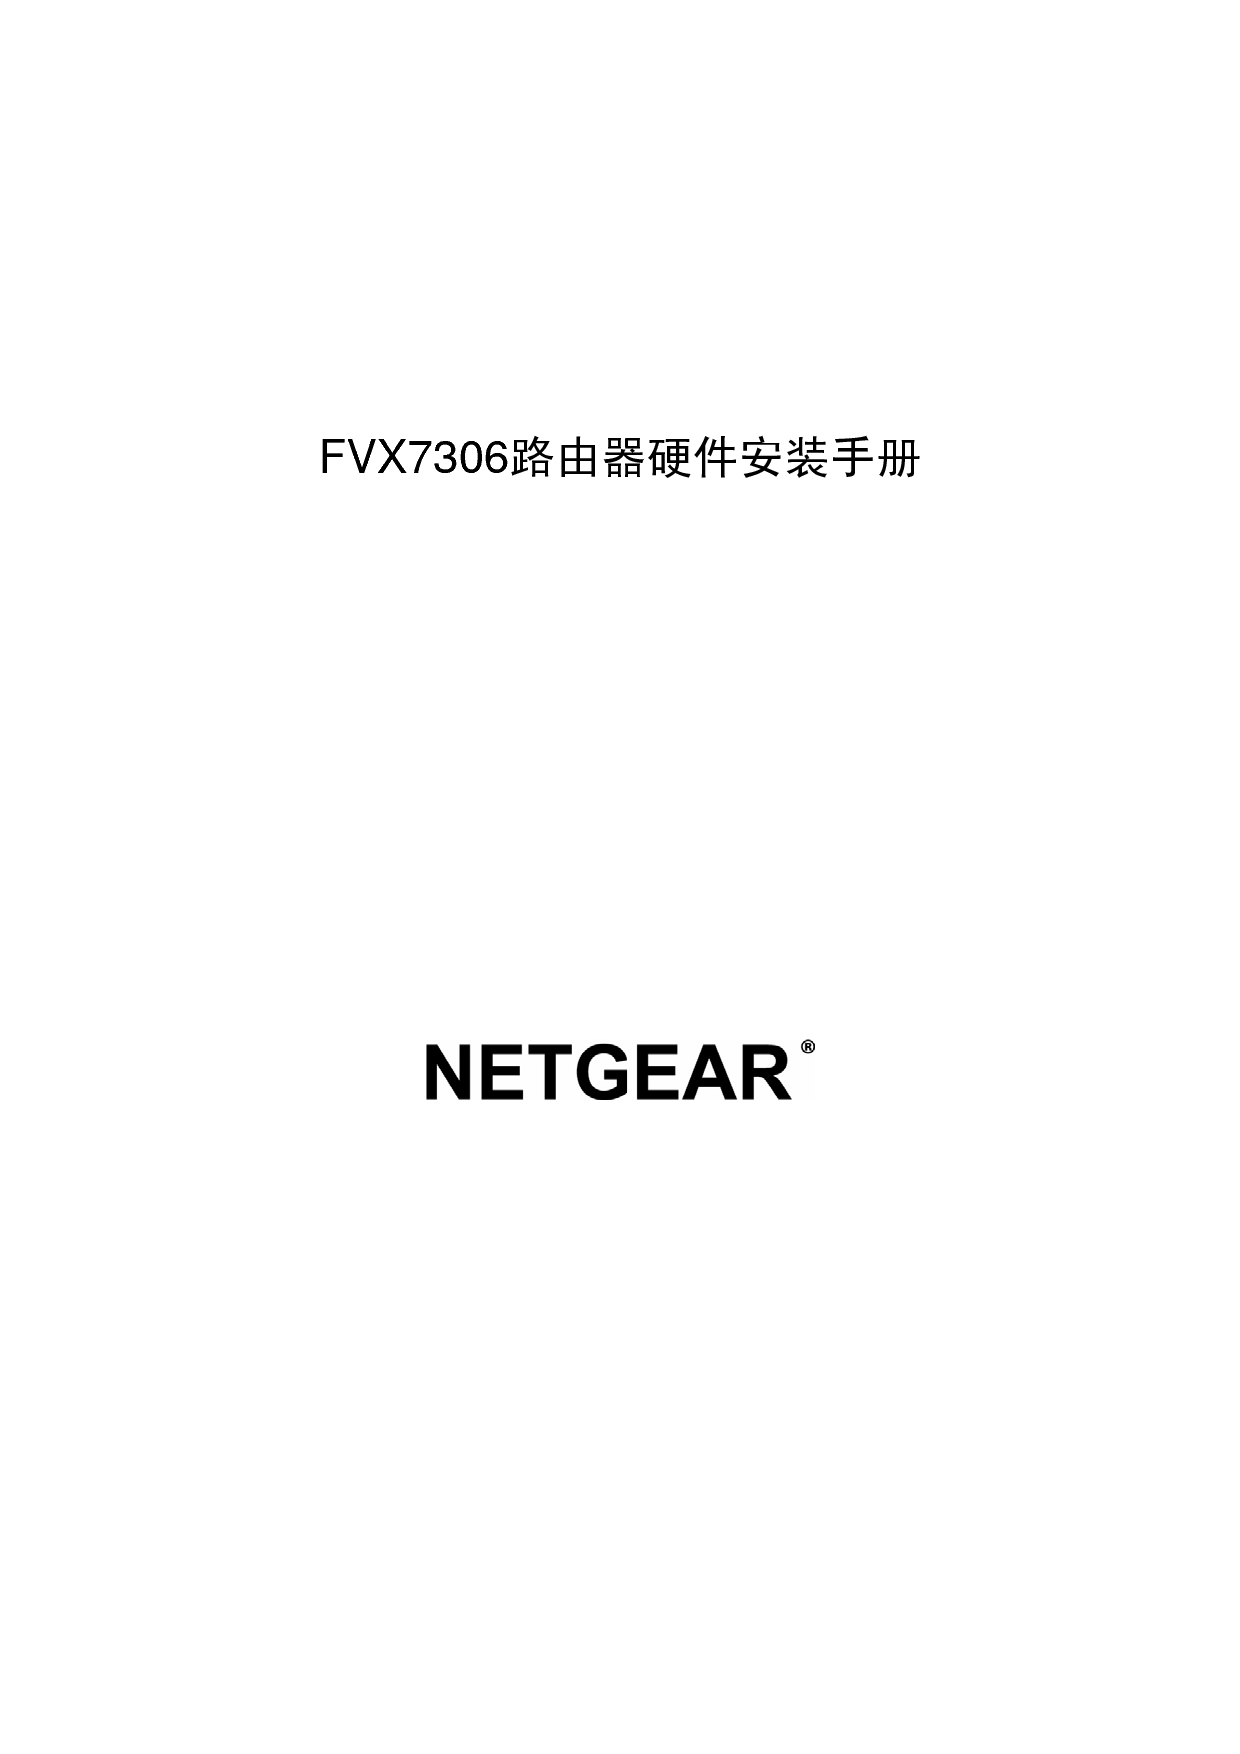 网件 Netgear FVX7306 快速安装指南 封面